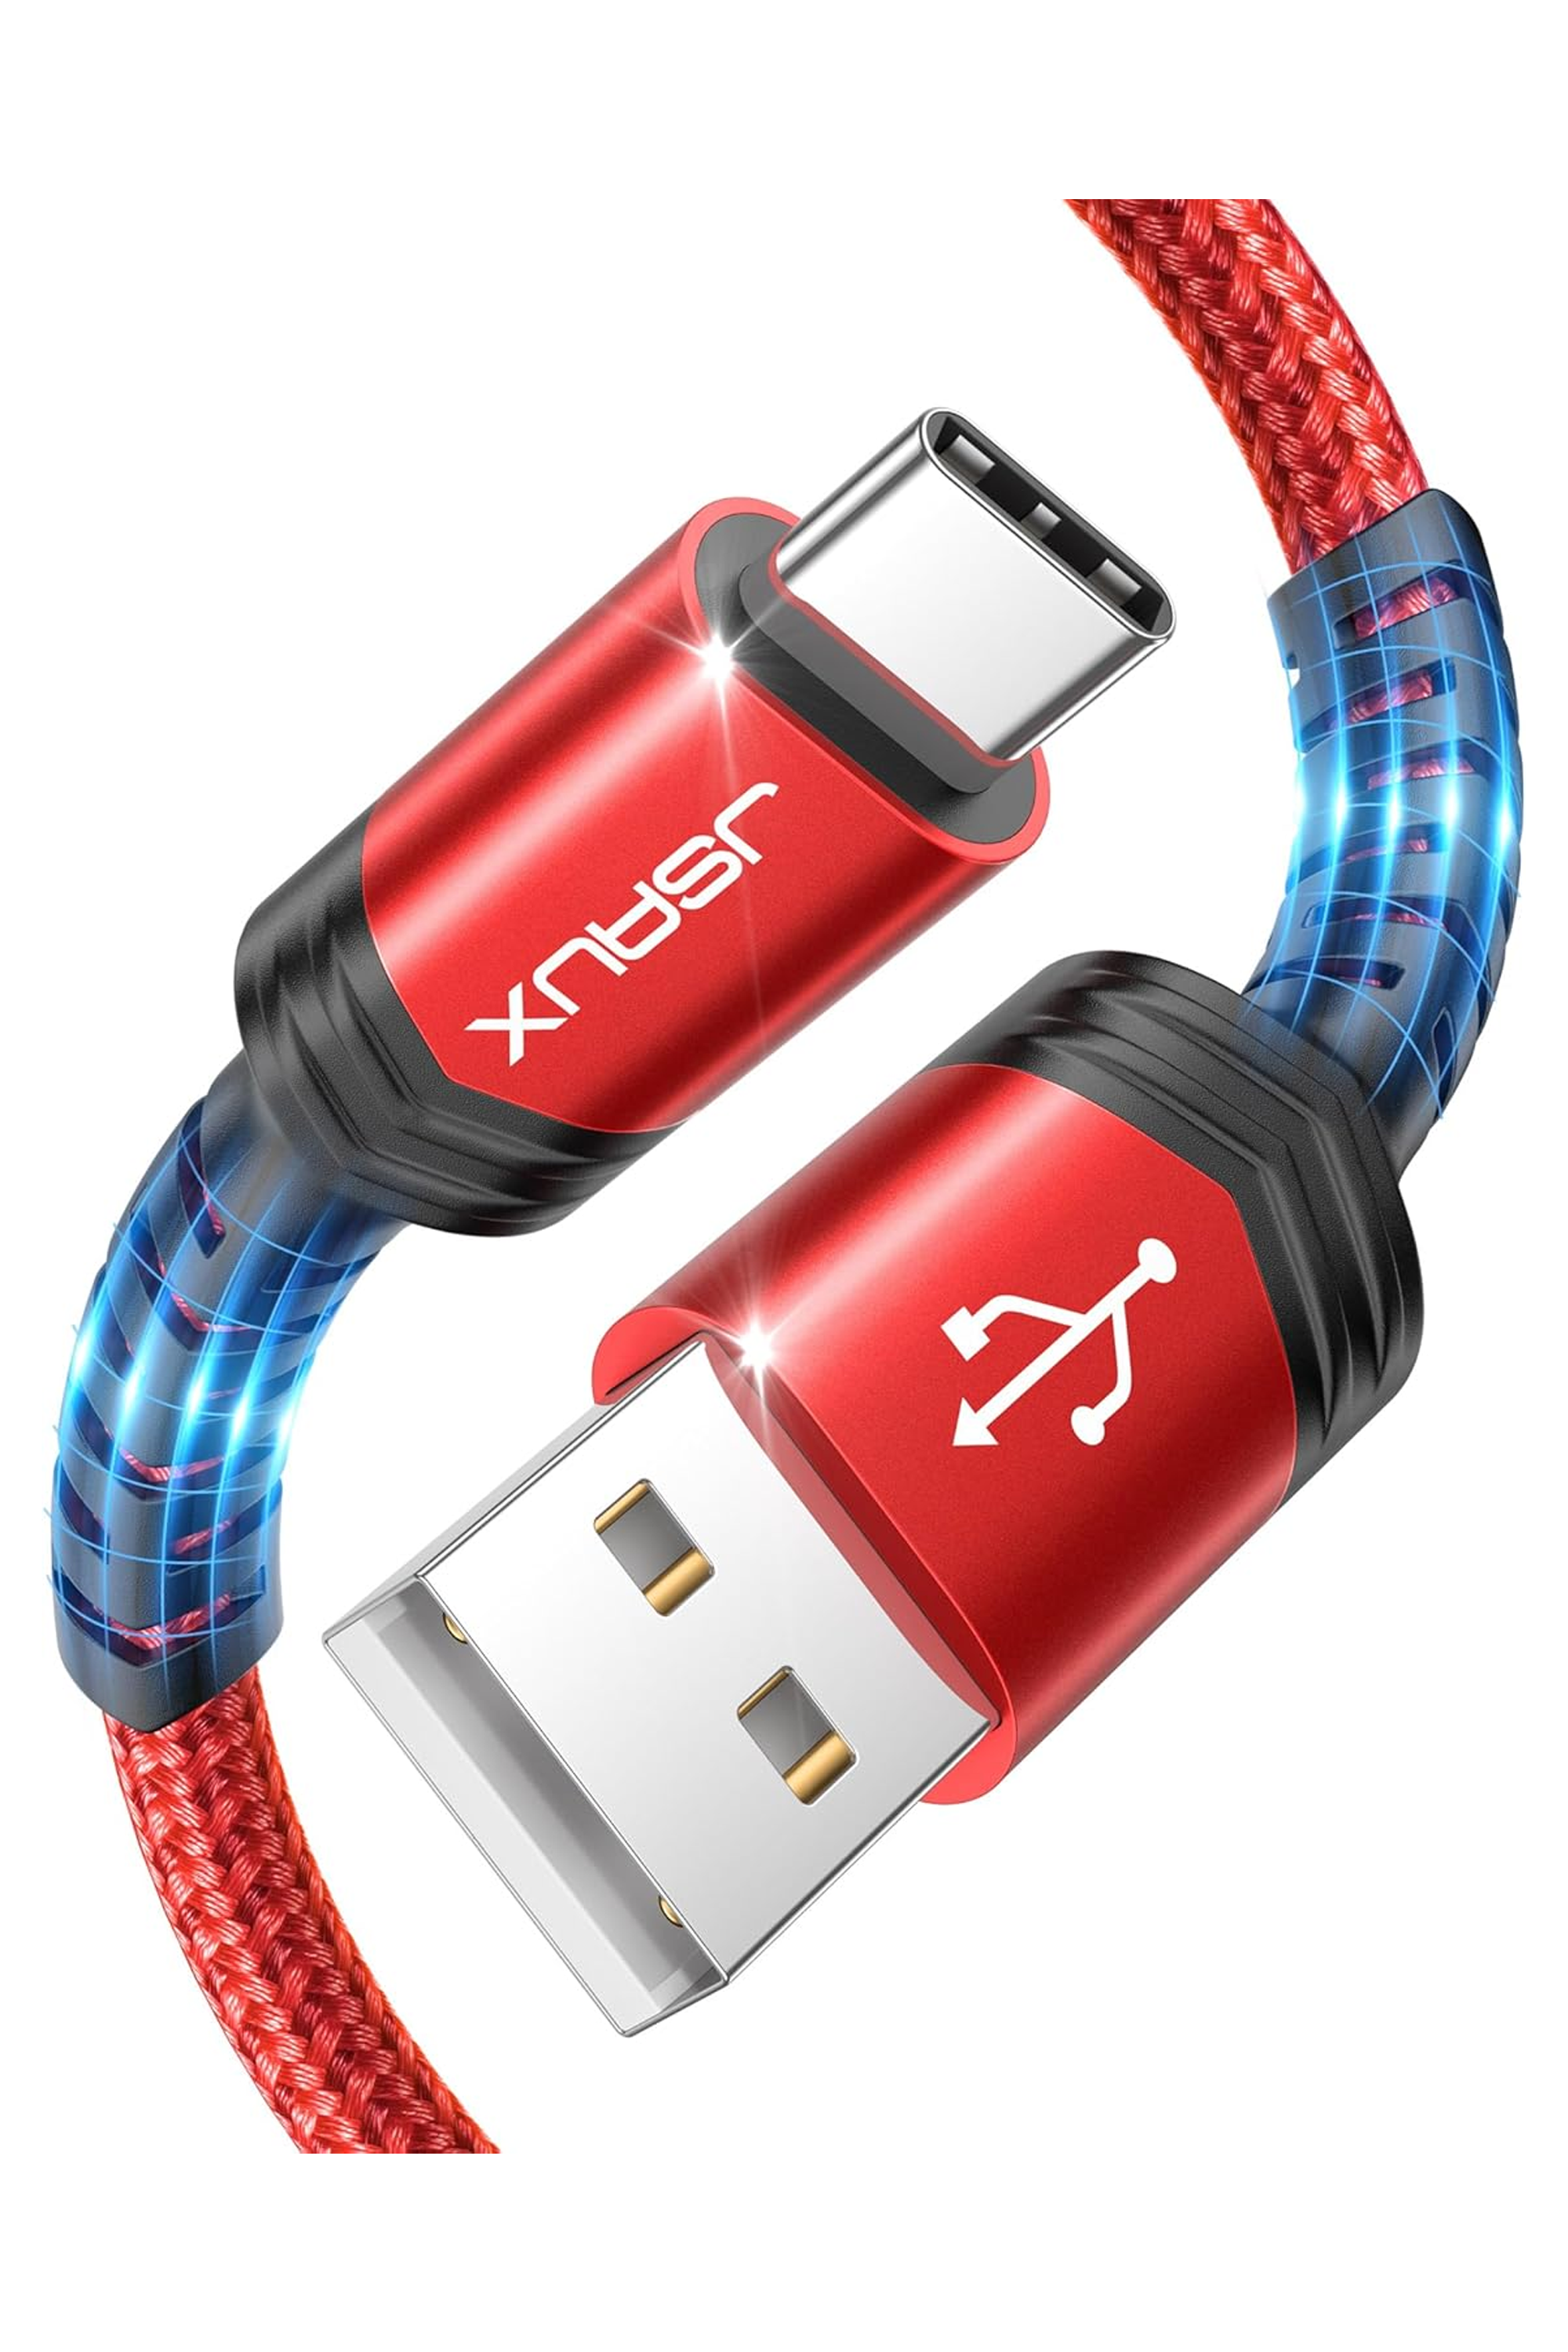 JSAUX USB C Cable